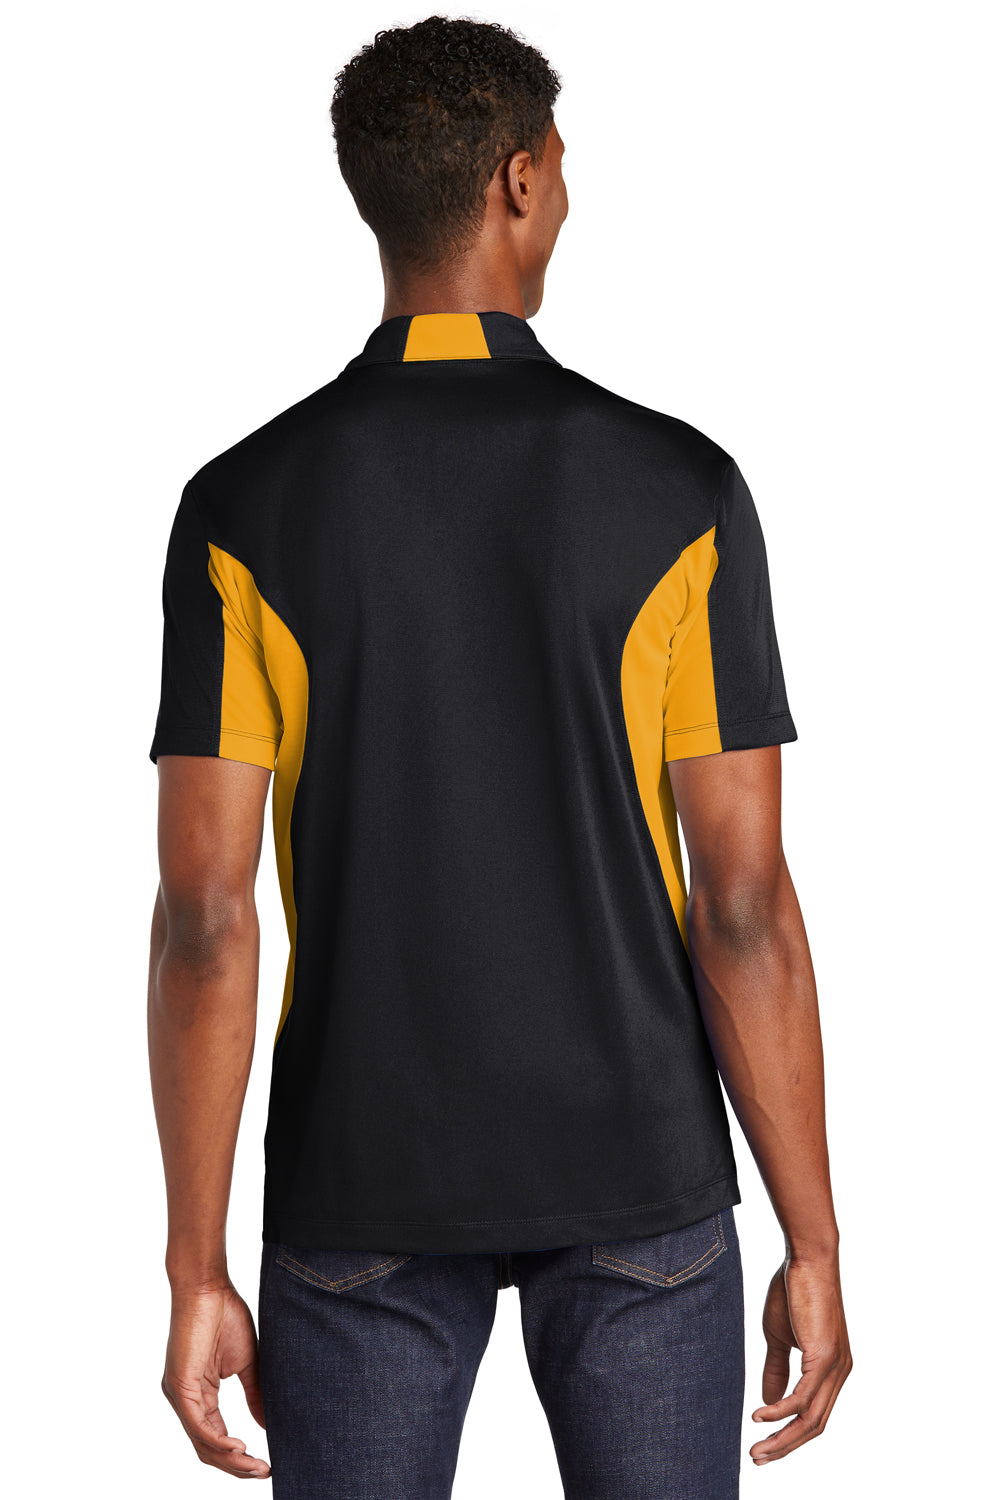 Sport-Tek ST655 Mens Sport-Wick Moisture Wicking Short Sleeve Polo Shirt Black/Gold Back